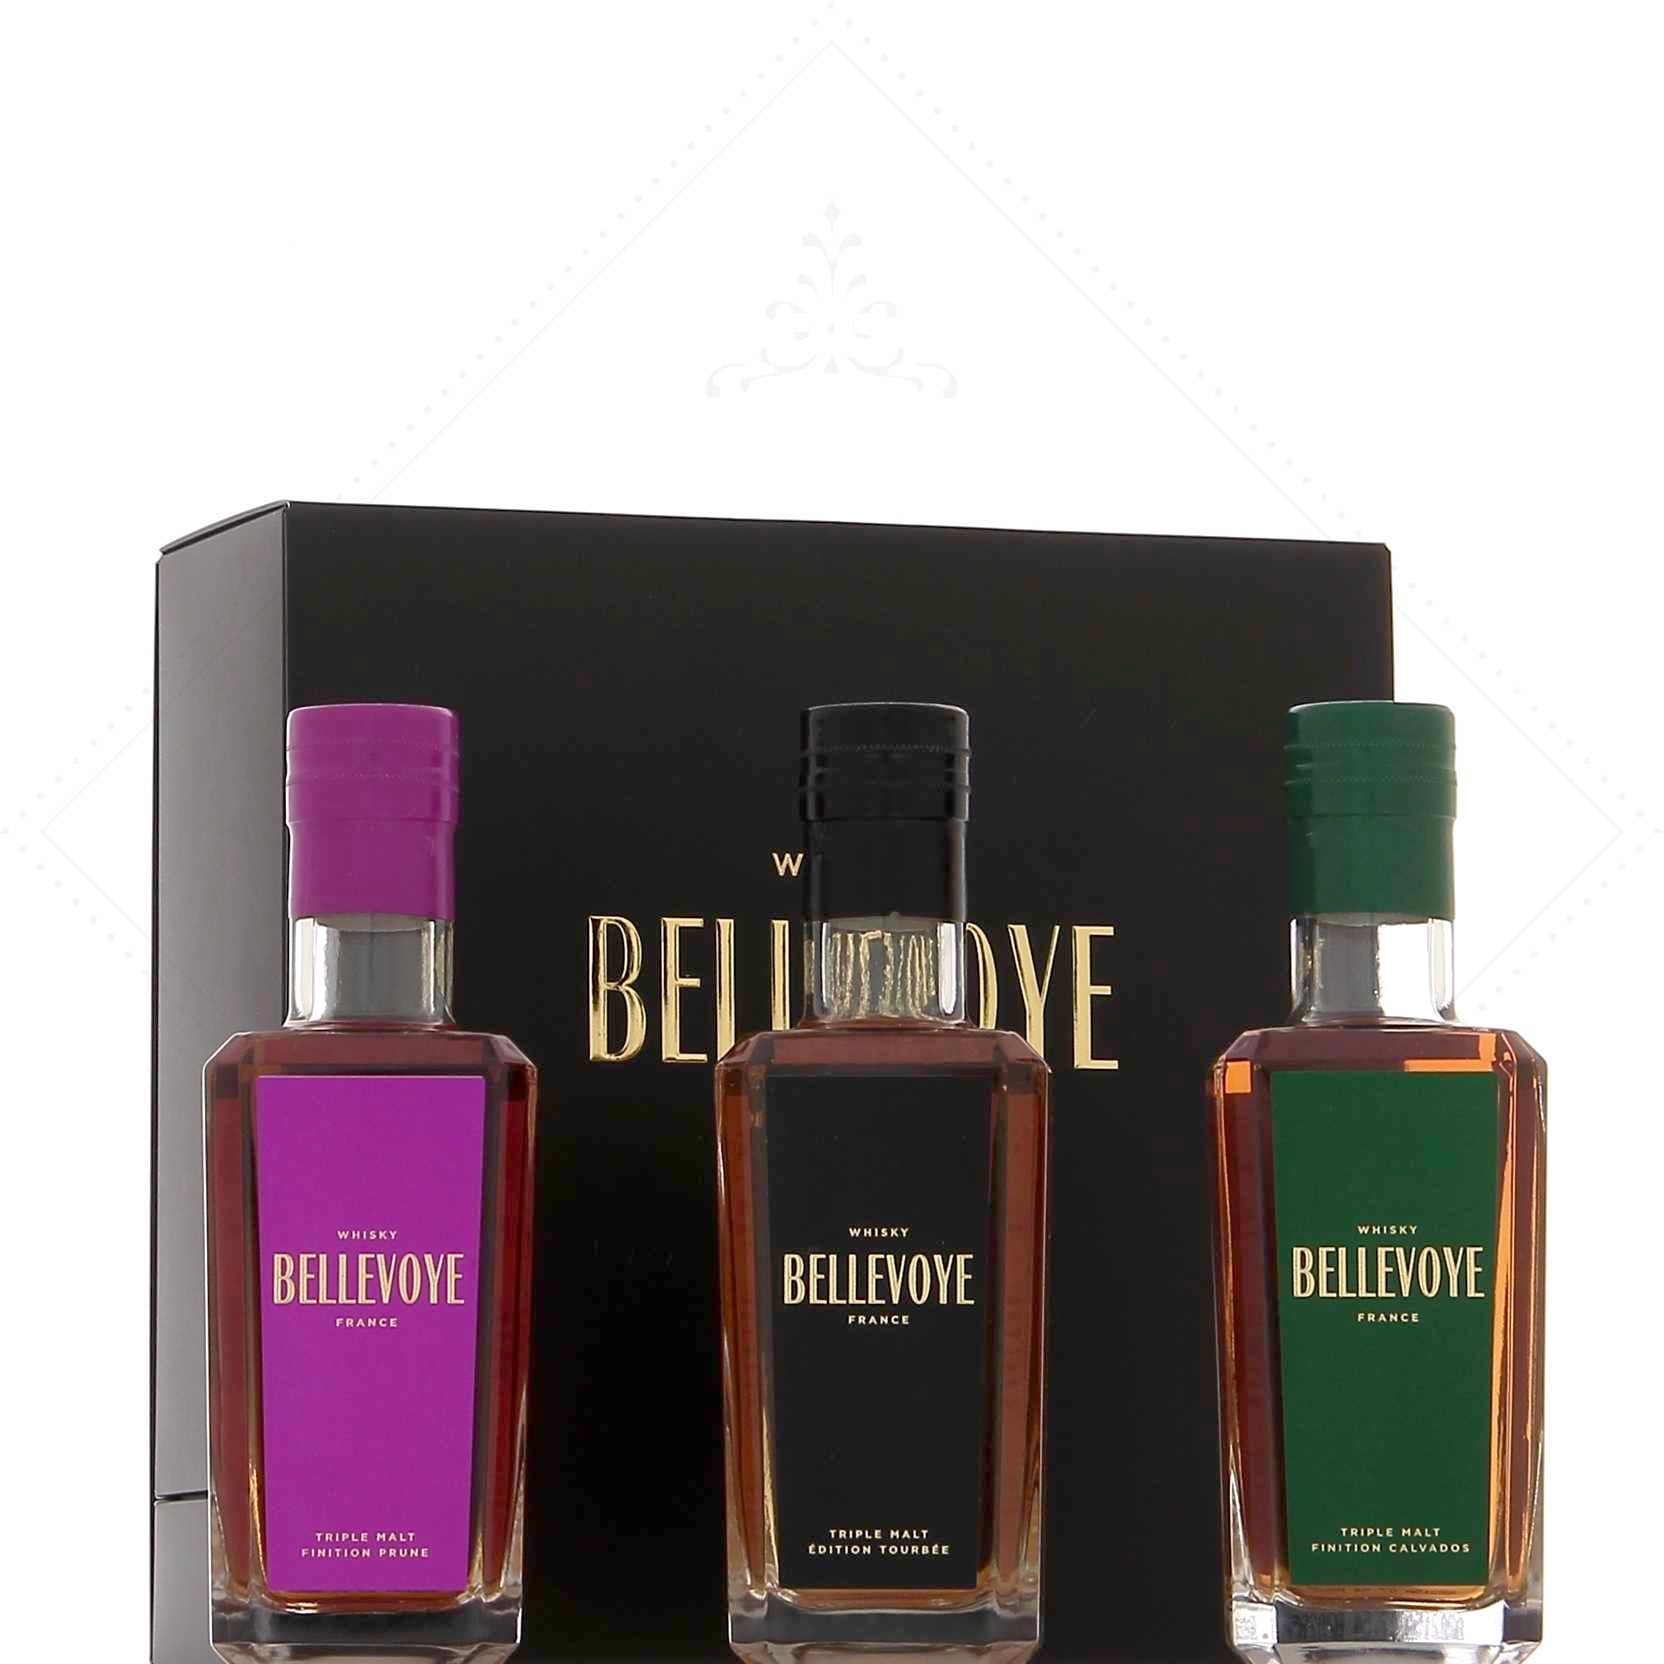 Whisky Bellevoye Noir 43° Triple Malt Tourbé 70cl France